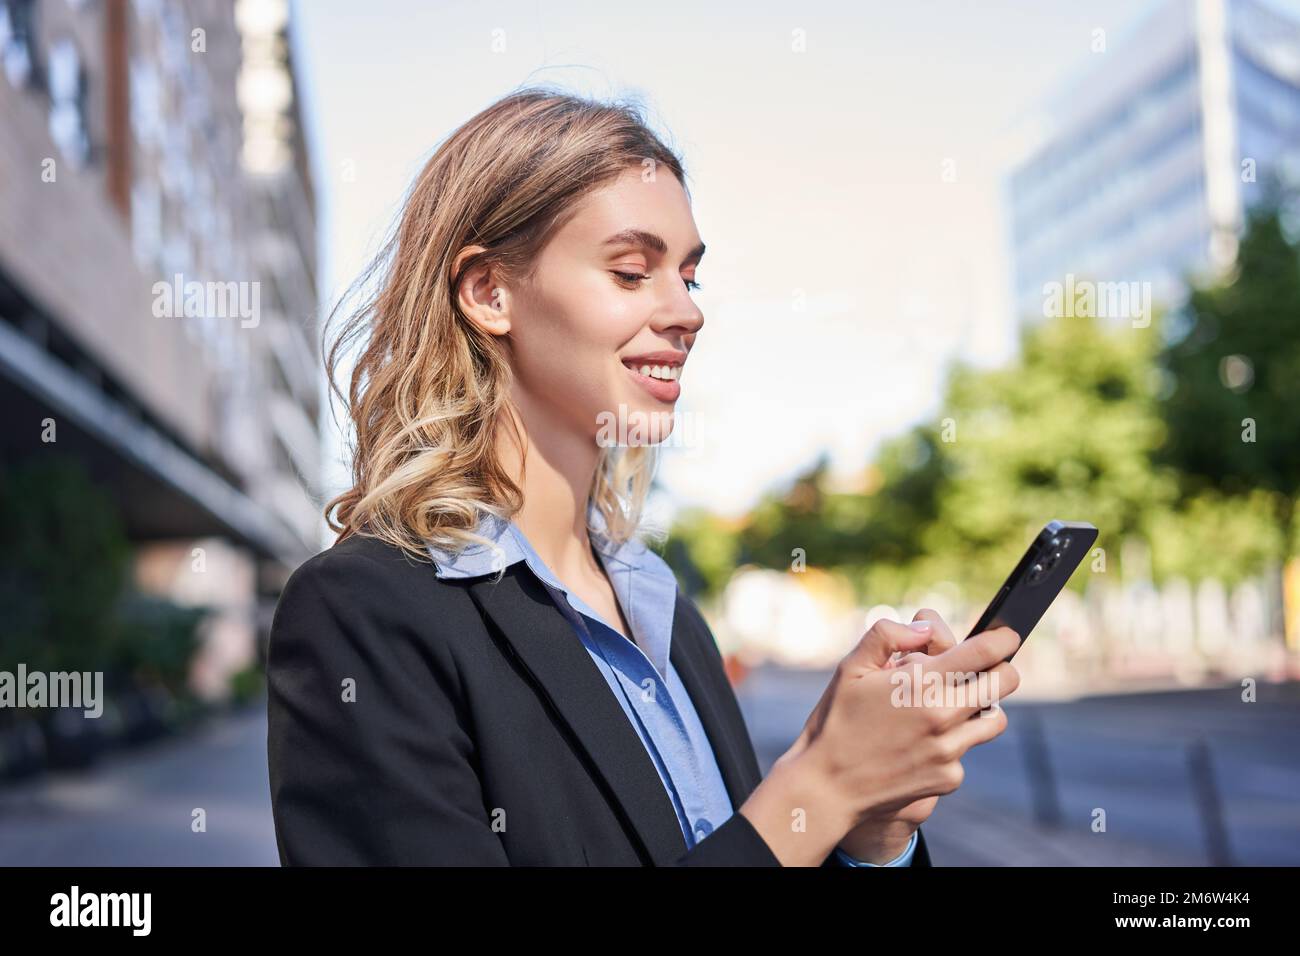 Eine Frau aus dem Unternehmen steht auf der Straße und SMS auf das Mobiltelefon, lächelt, während sie auf den Smartphone-Bildschirm schaut Stockfoto